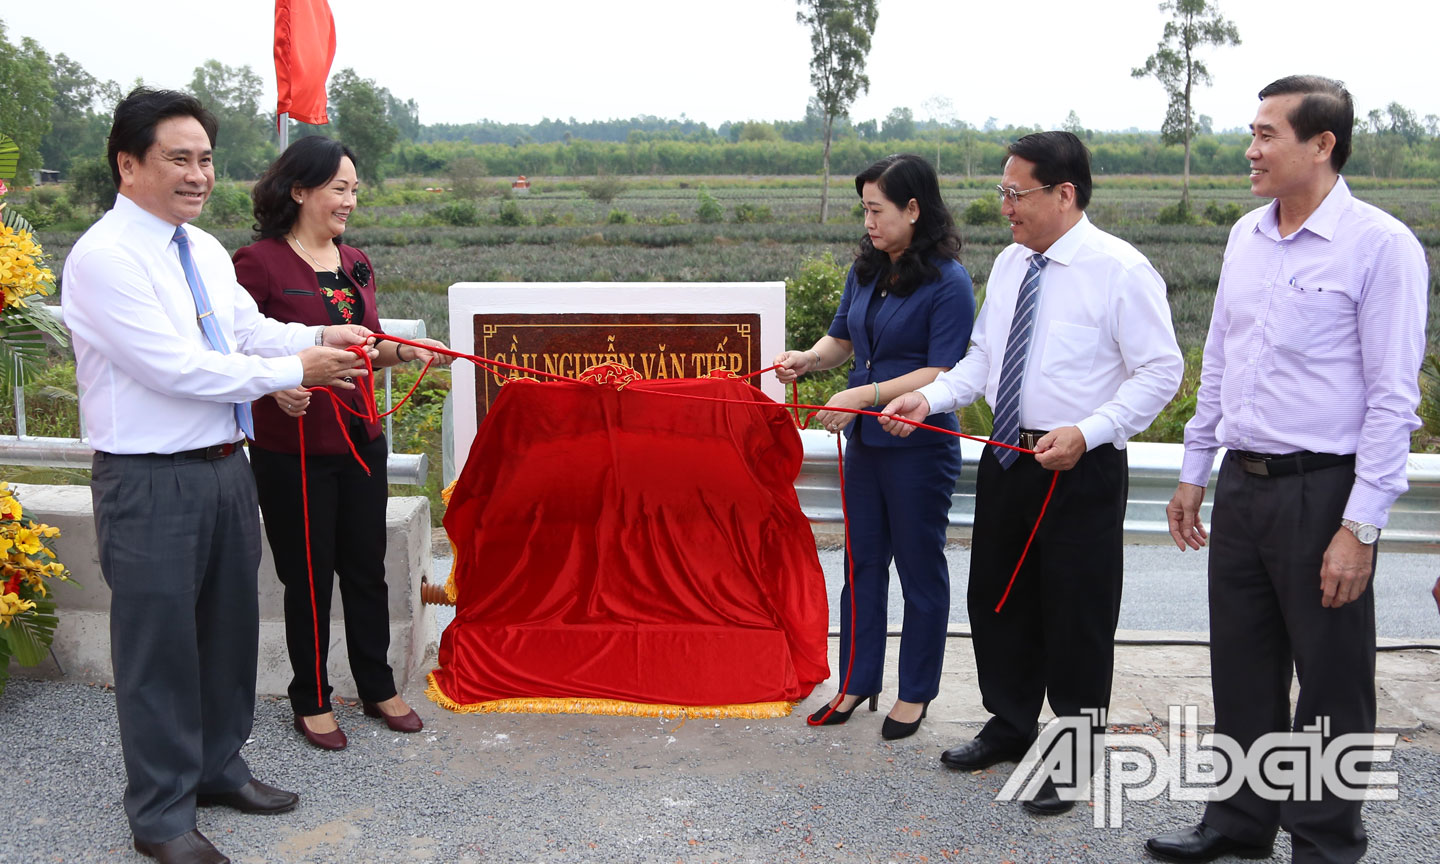 Lãnh đạo tỉnh Tiền Giang thực hiện nghi thức thông xe cầu Nguyễn Văn Tiếp.